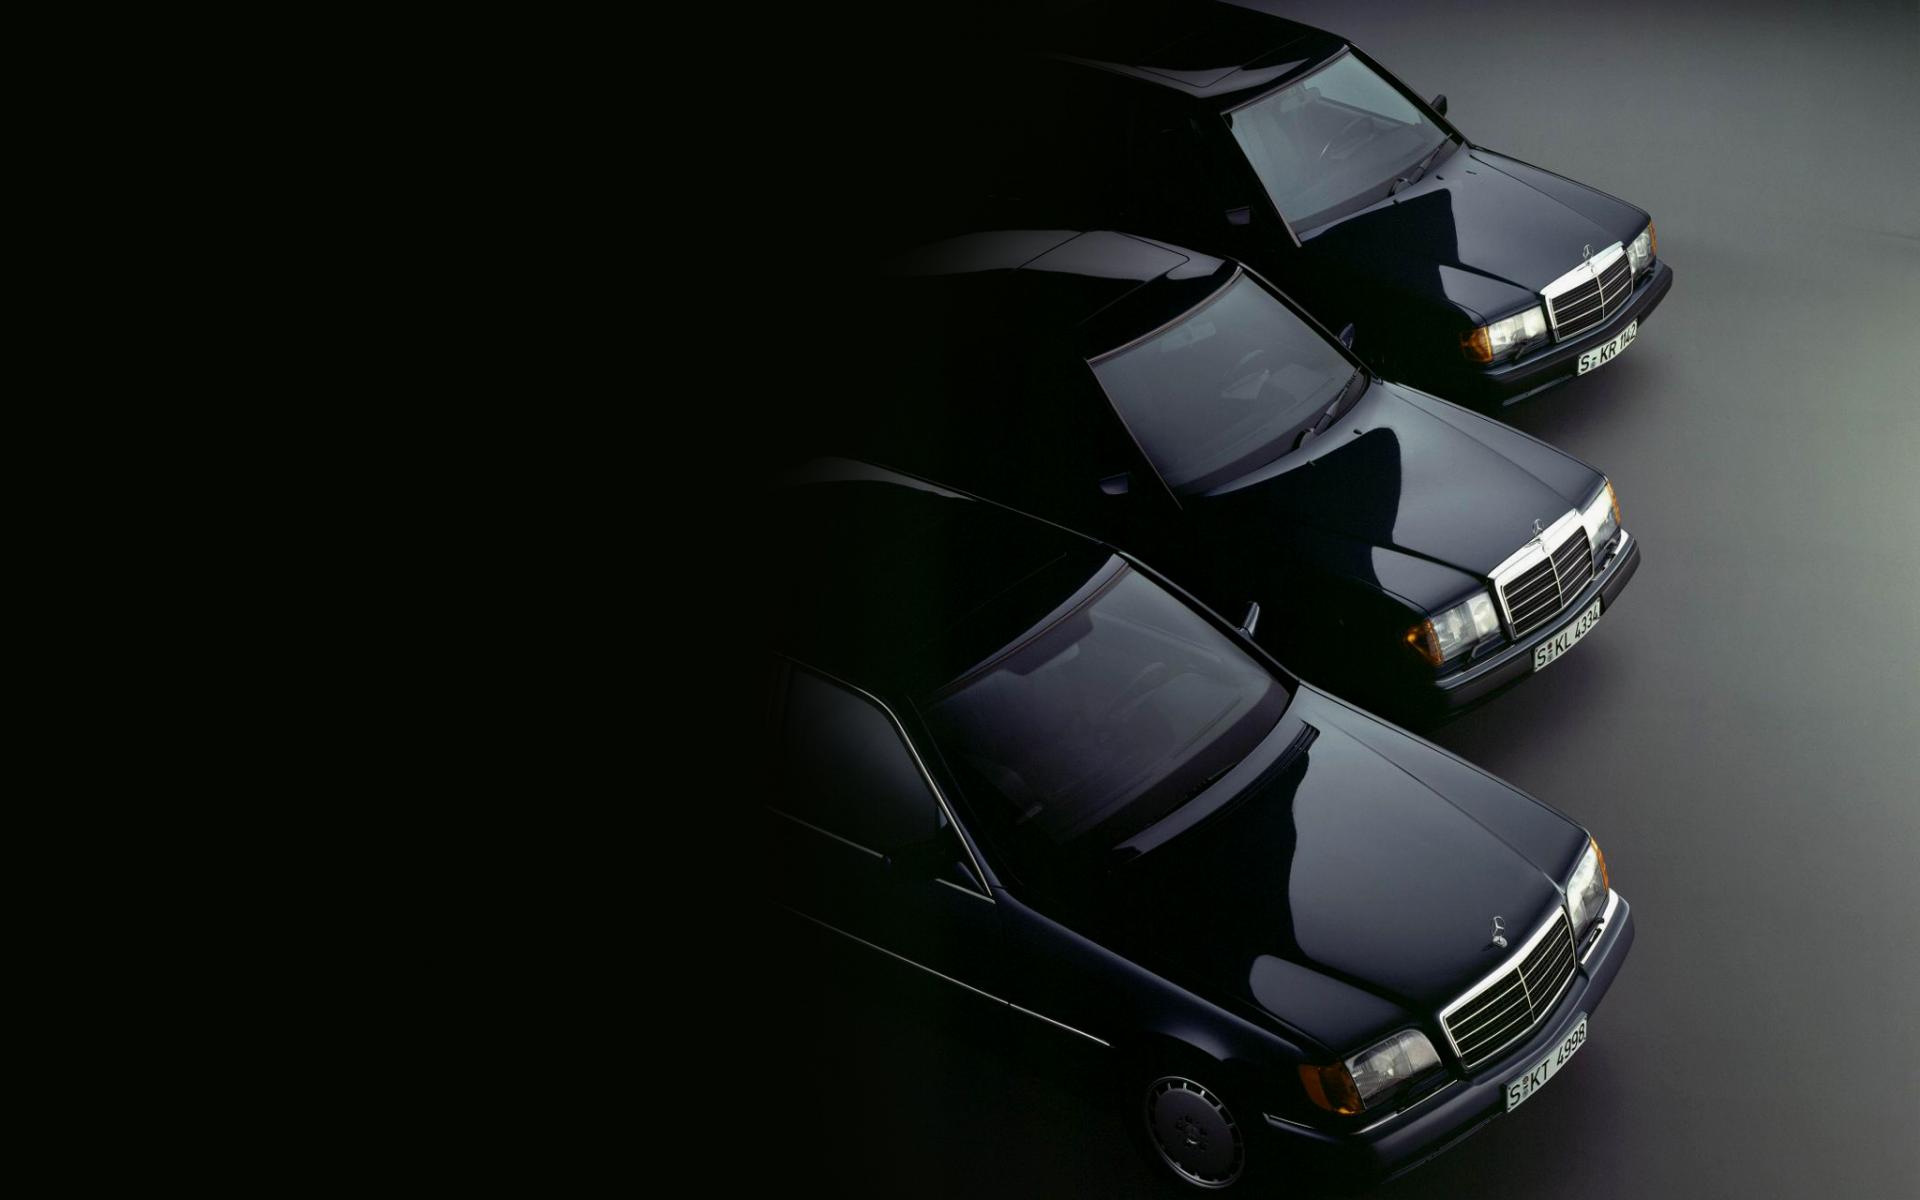 mercedes benz logo wallpaper hd,landfahrzeug,fahrzeug,auto,luxusfahrzeug,persönliches luxusauto